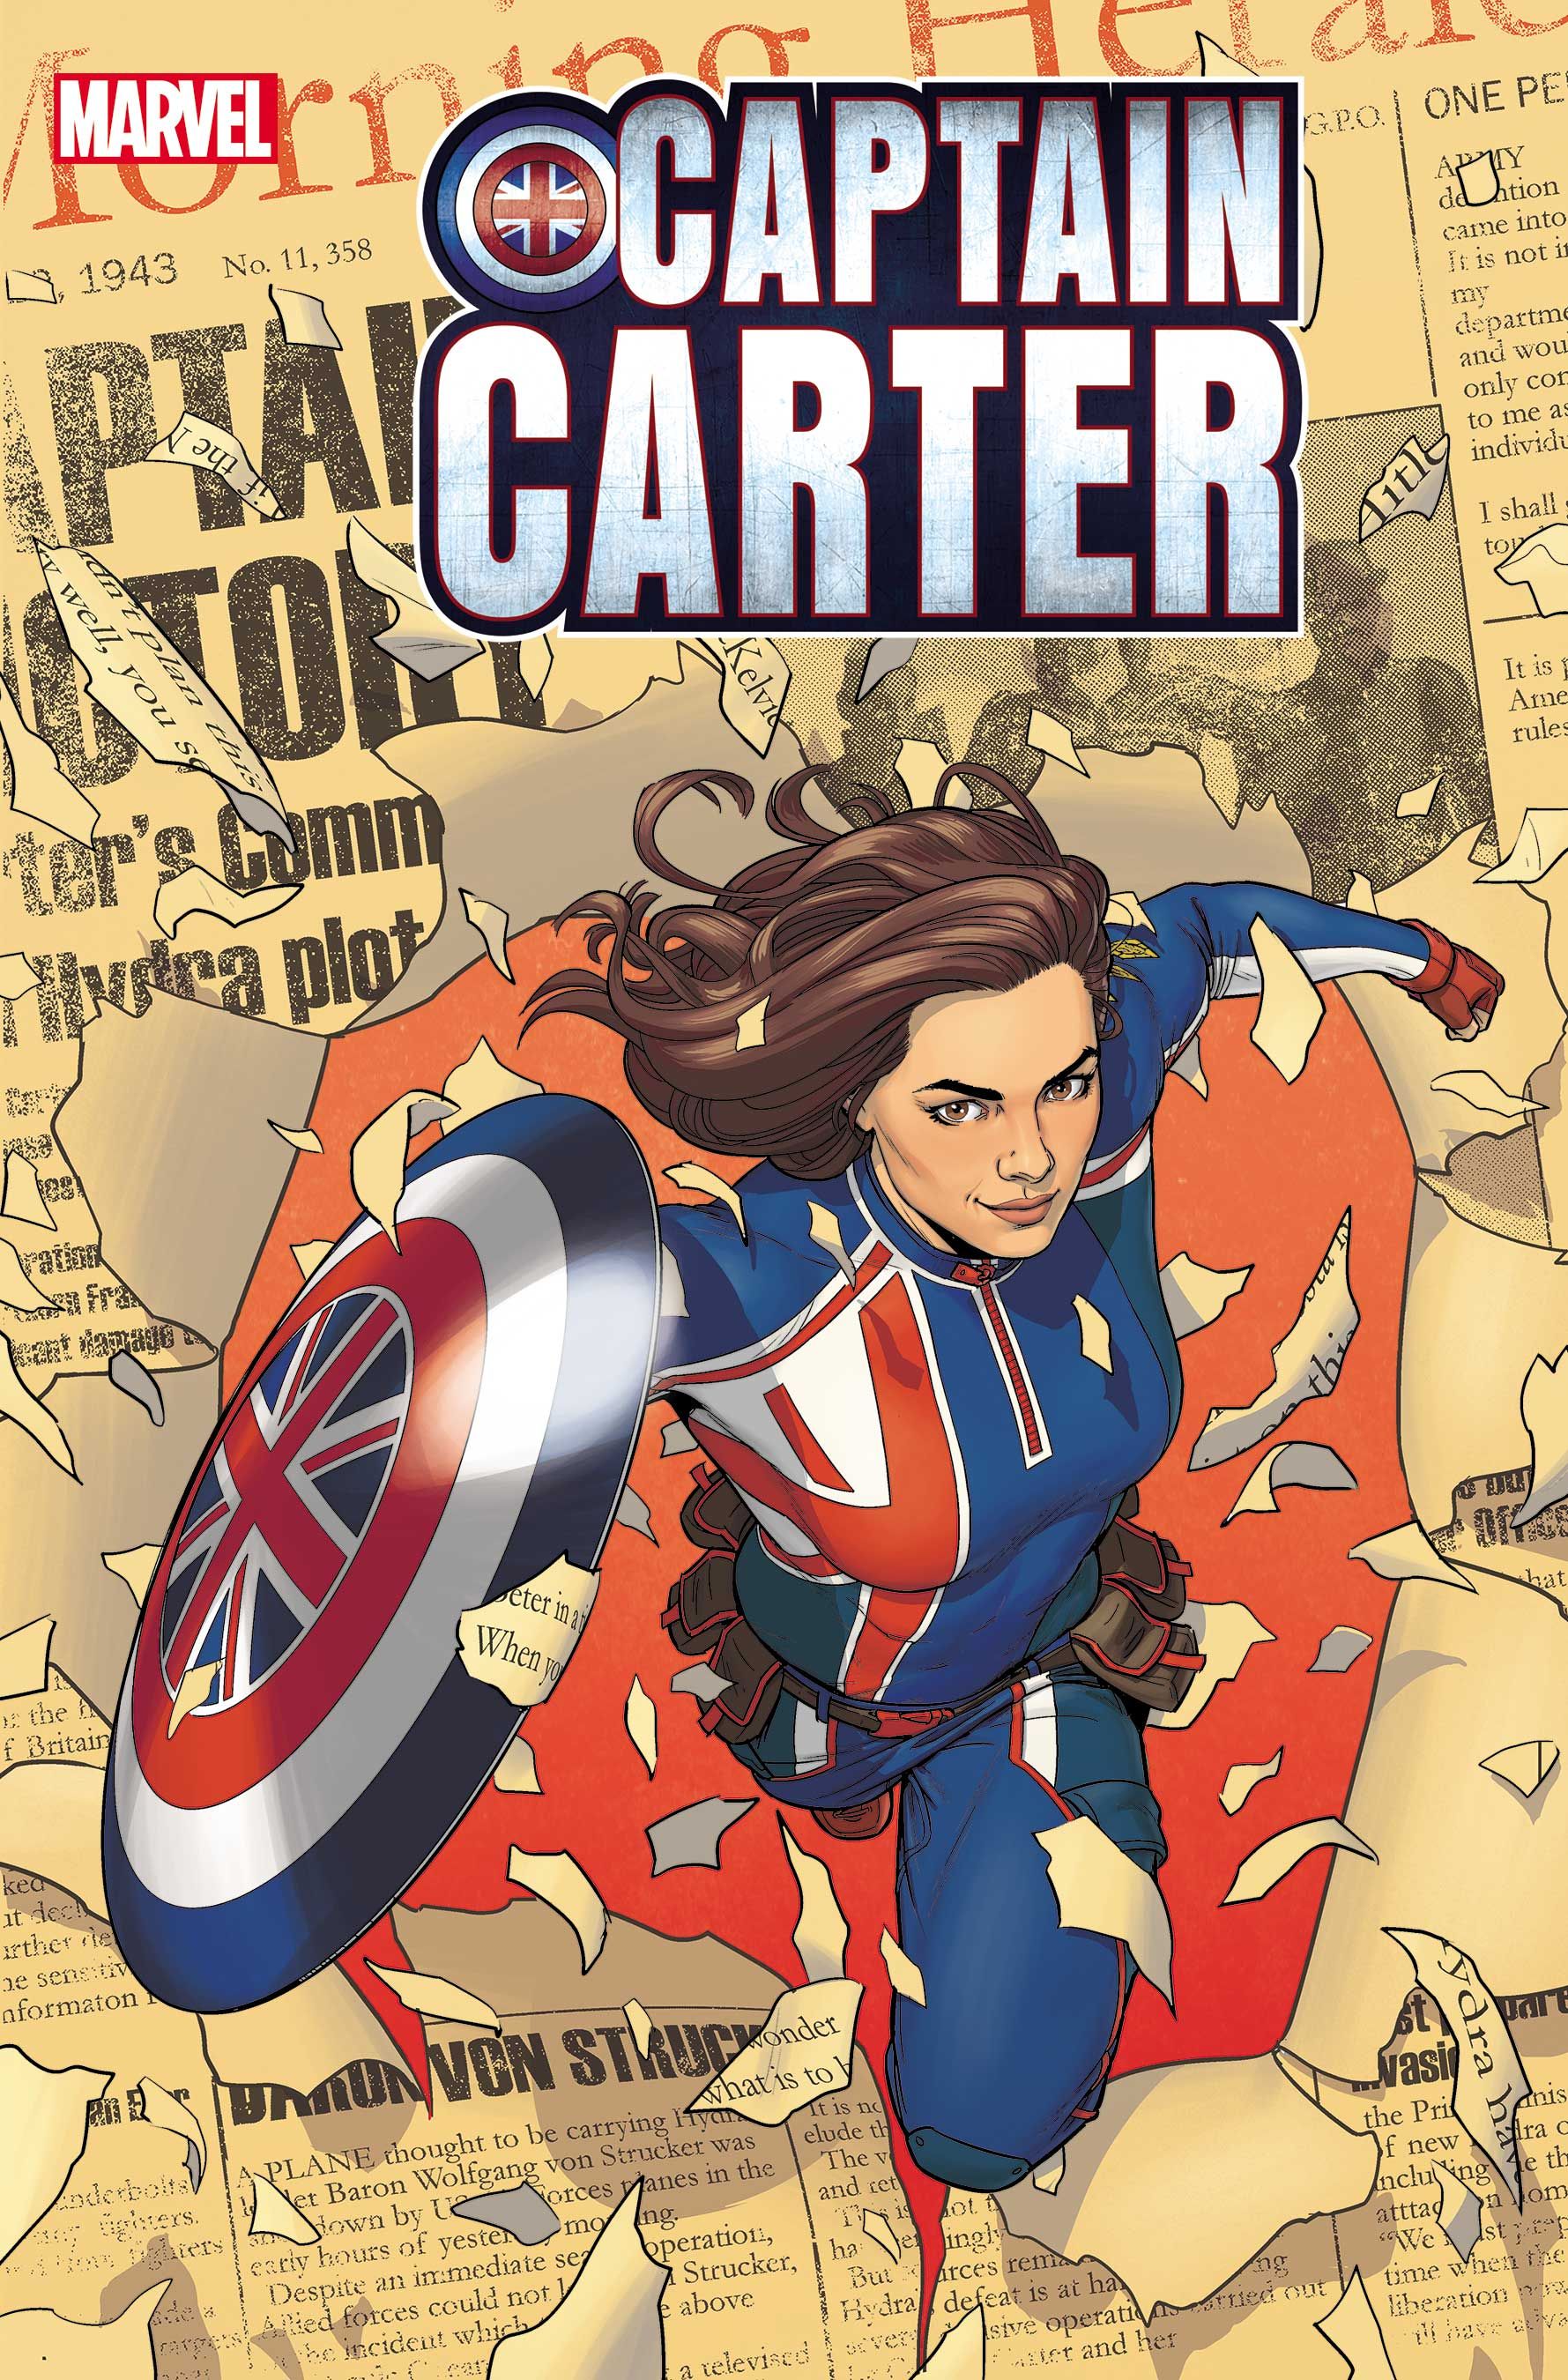 Marvel's Captain Carter